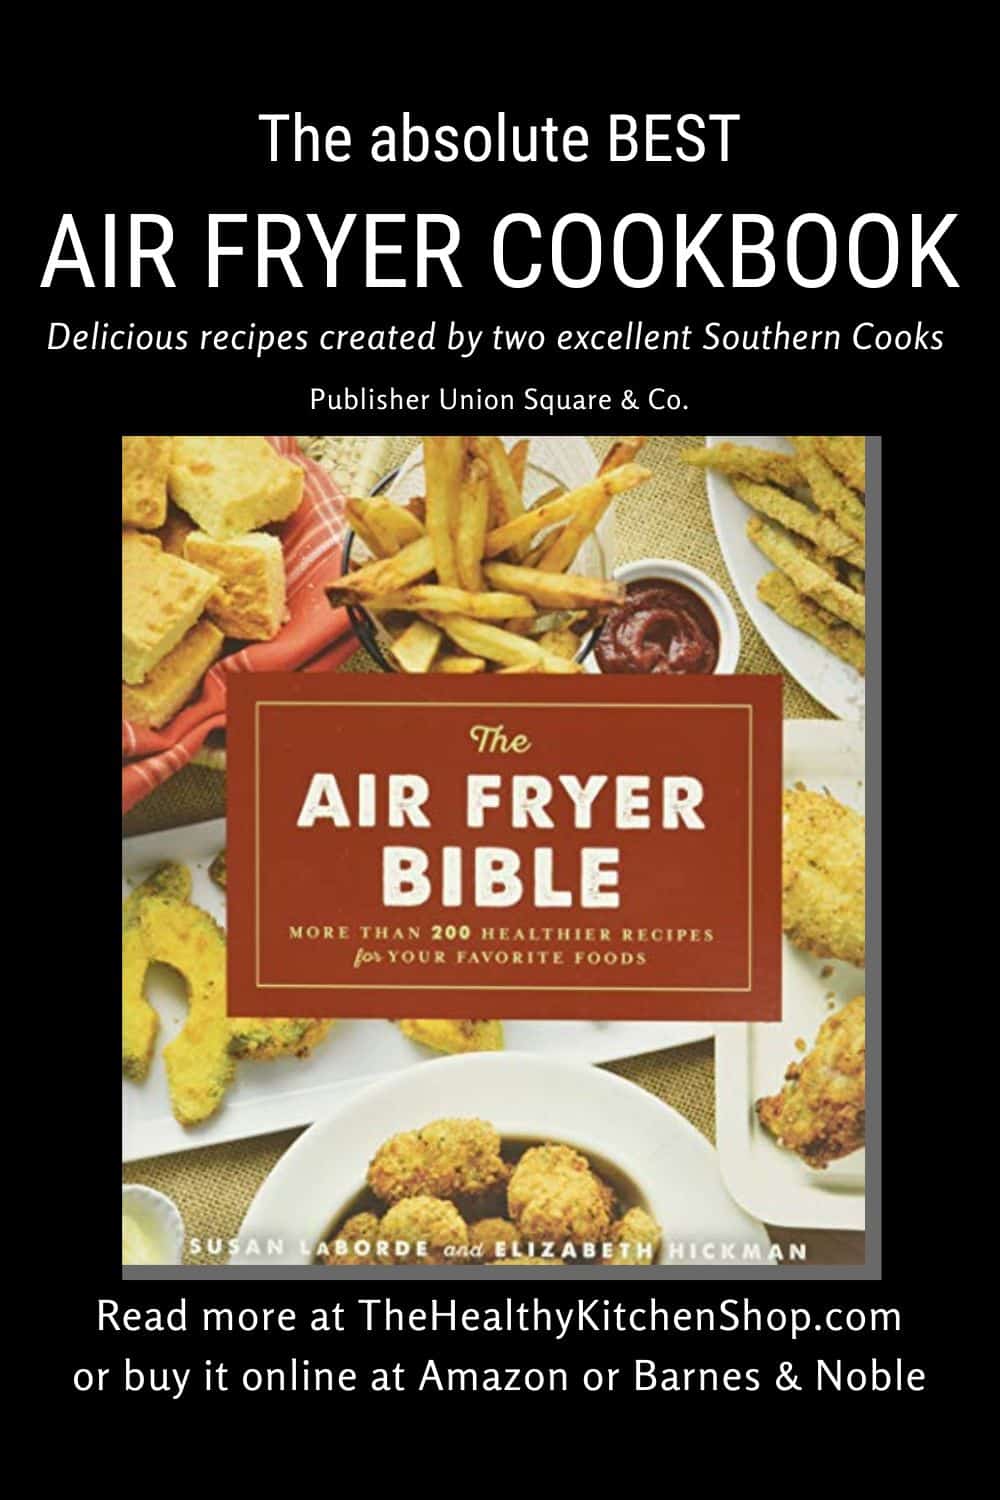 Best Air Fryer Cookbook - The Air Fryer Bible